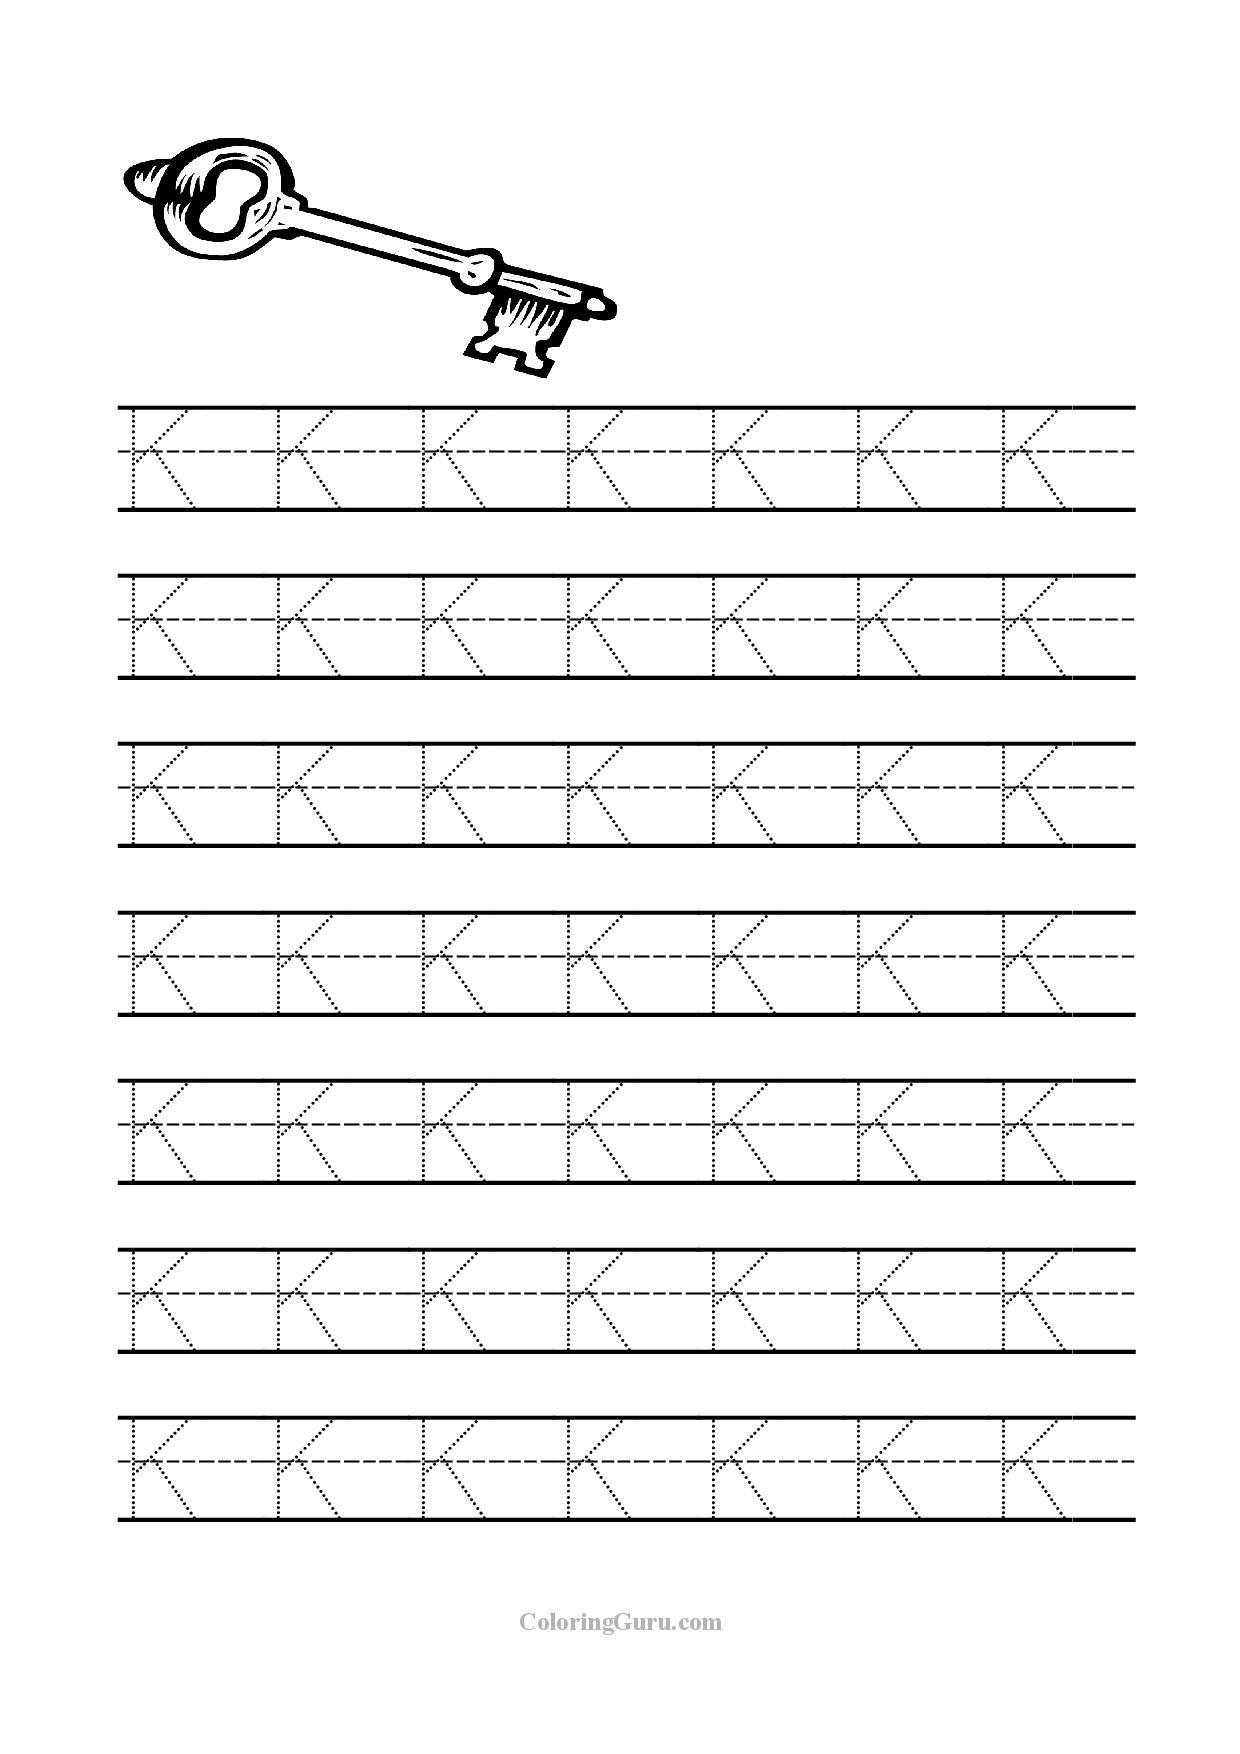 printable-letter-k-tracing-worksheets-for-kindergarten-preschool-crafts-tracing-letter-k